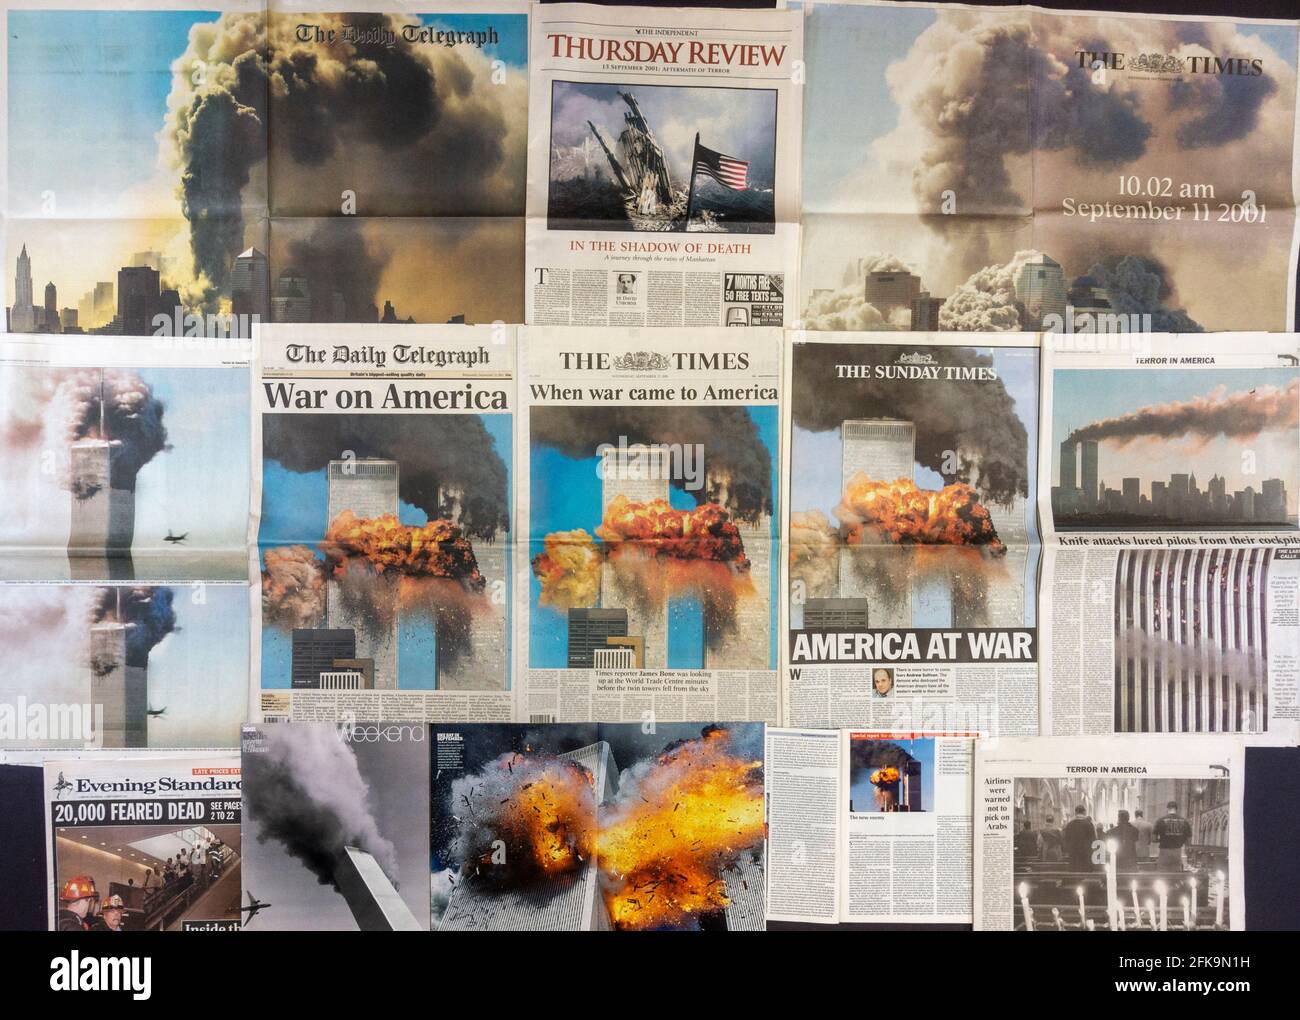 Collage/esposizione massiccia delle reazioni di giornali e riviste del Regno Unito a seguito degli attacchi terroristici contro gli Stati Uniti l'11 settembre 2001. Foto Stock